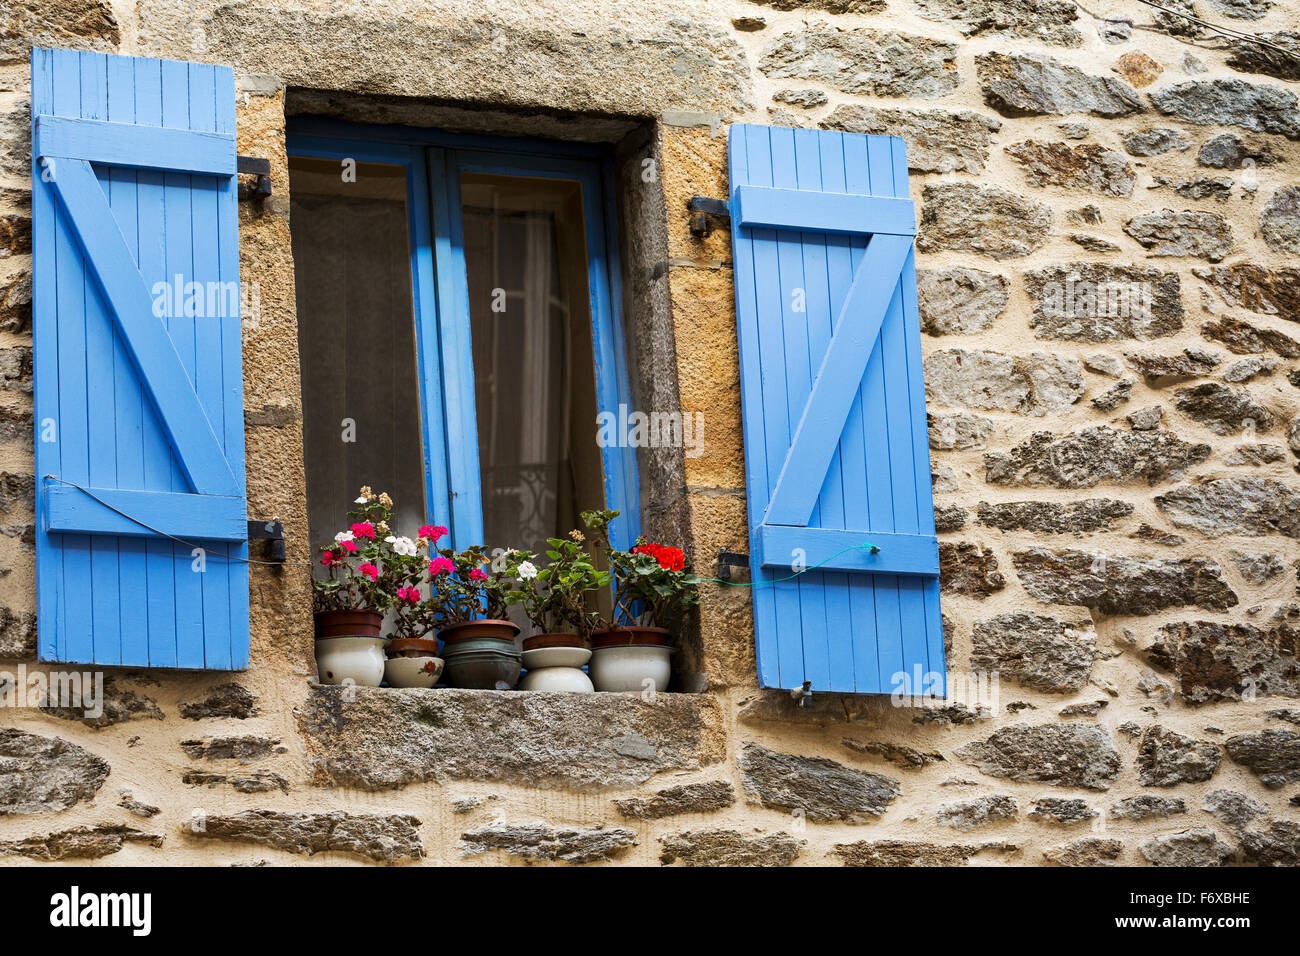 Close up colorfully dipinto di blu scuri e telaio della finestra su un edificio in pietra con vasi di fiori sul davanzale della finestra; Brest, Brittany, Francia Foto Stock